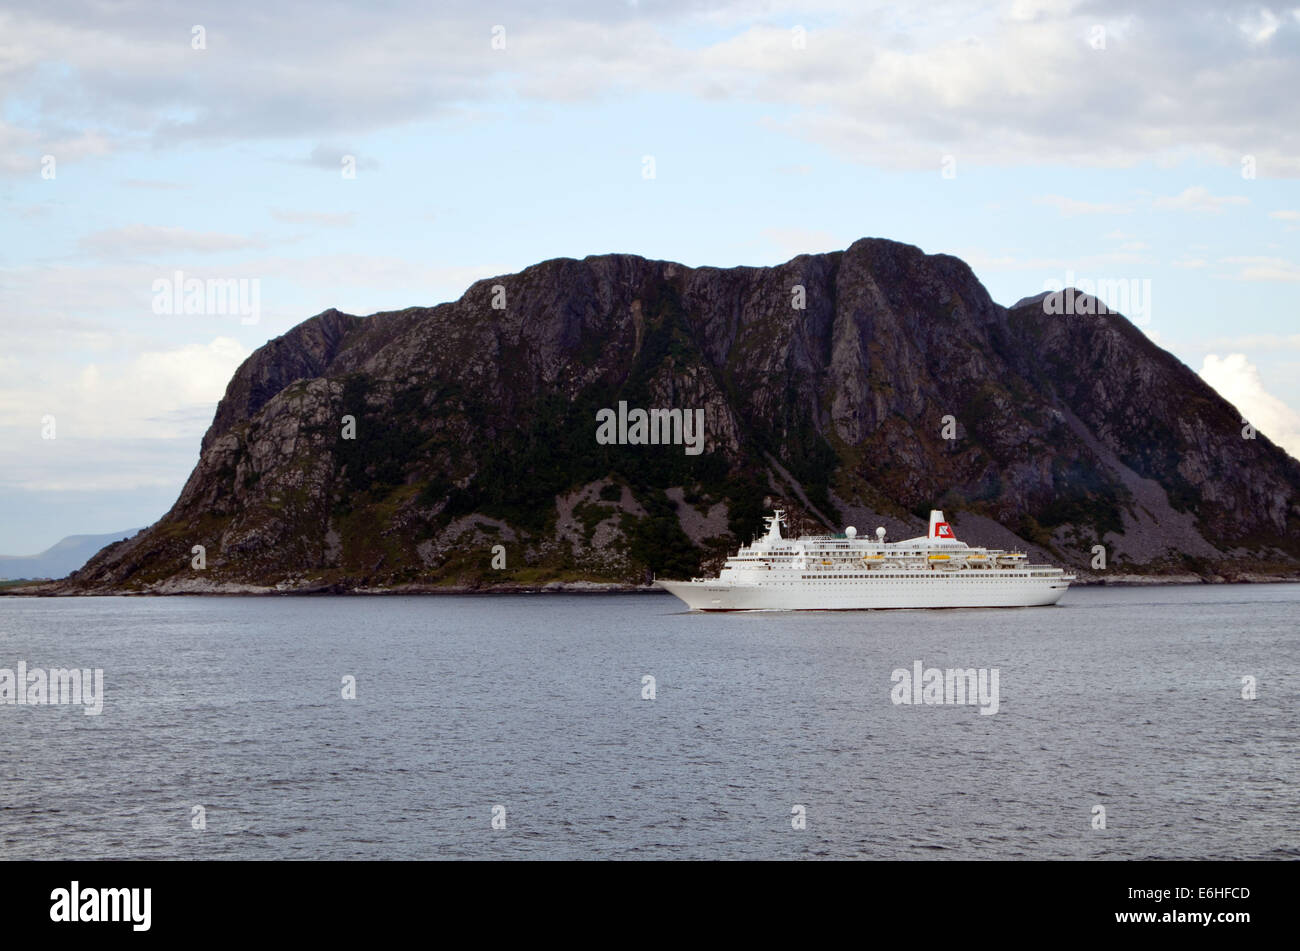 Il battello prosegue lungo la costa norvegese, costantemente rendendo il suo modo sud,oltre le piccole isole. Foto Stock